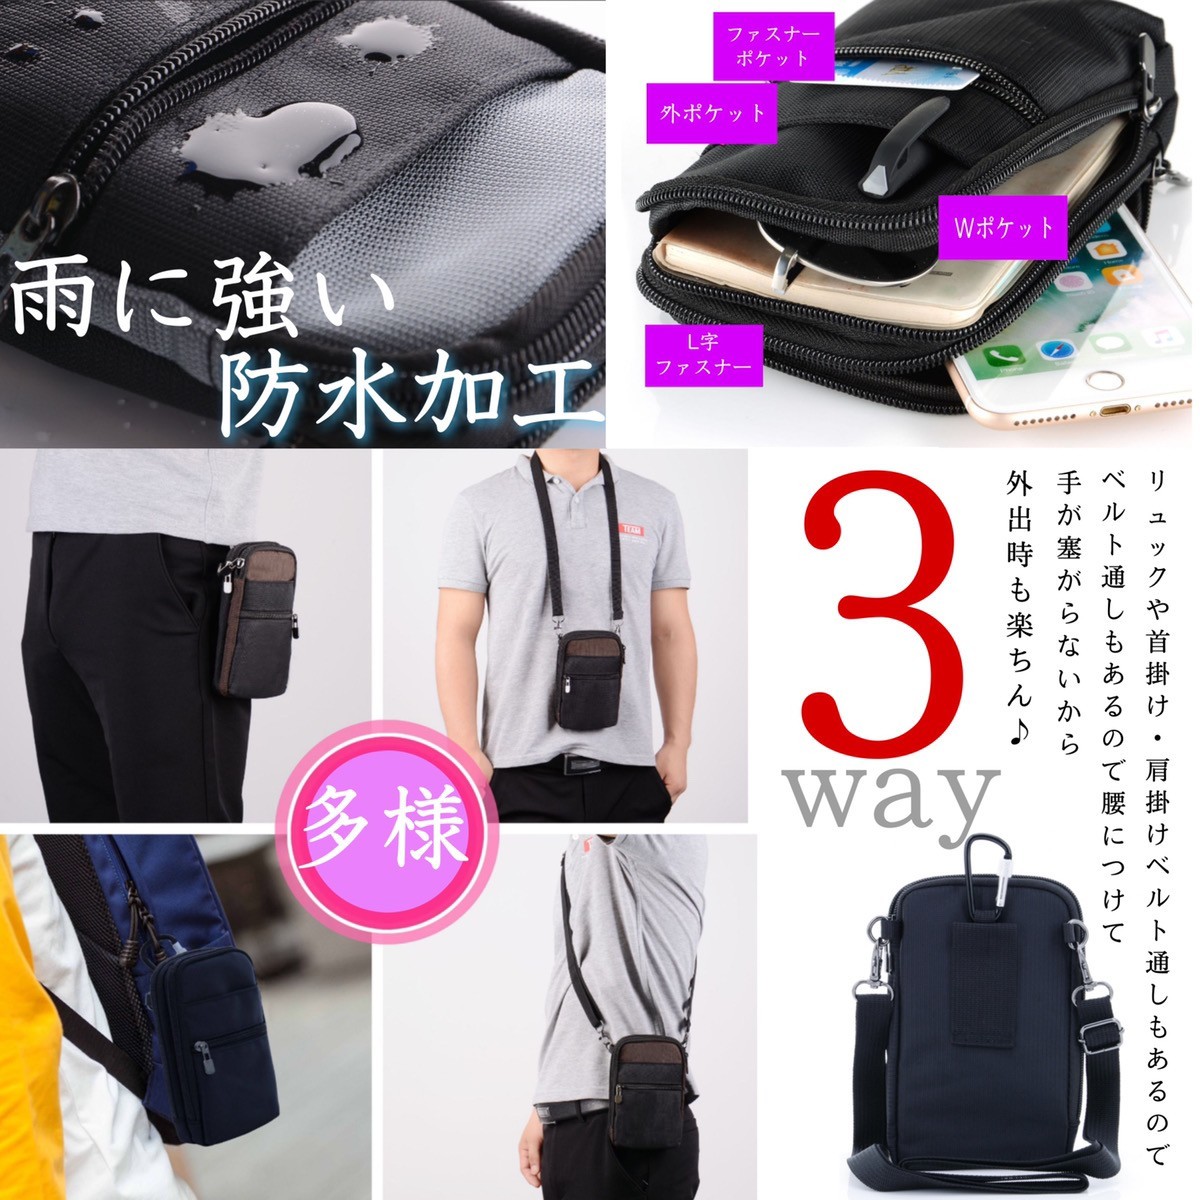  смартфон сумка смартфон плечо ремень сумка мужской женский поясная сумка плечо работа для модный inserting Tama .kalabina водонепроницаемый довольно большой 